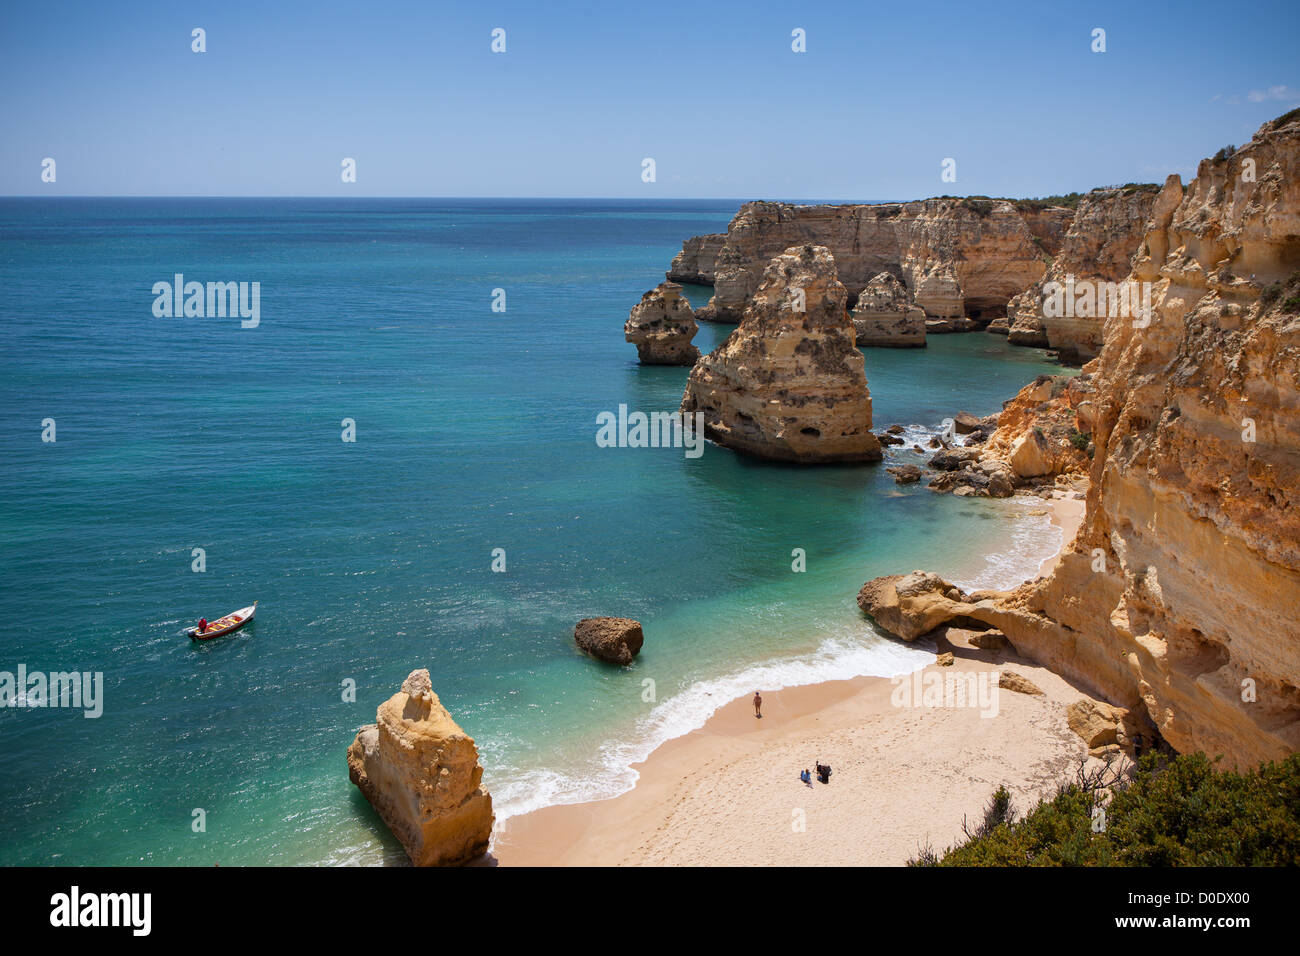 Praia da Marinha sulla spiaggia di Algarve in Portogallo Foto Stock